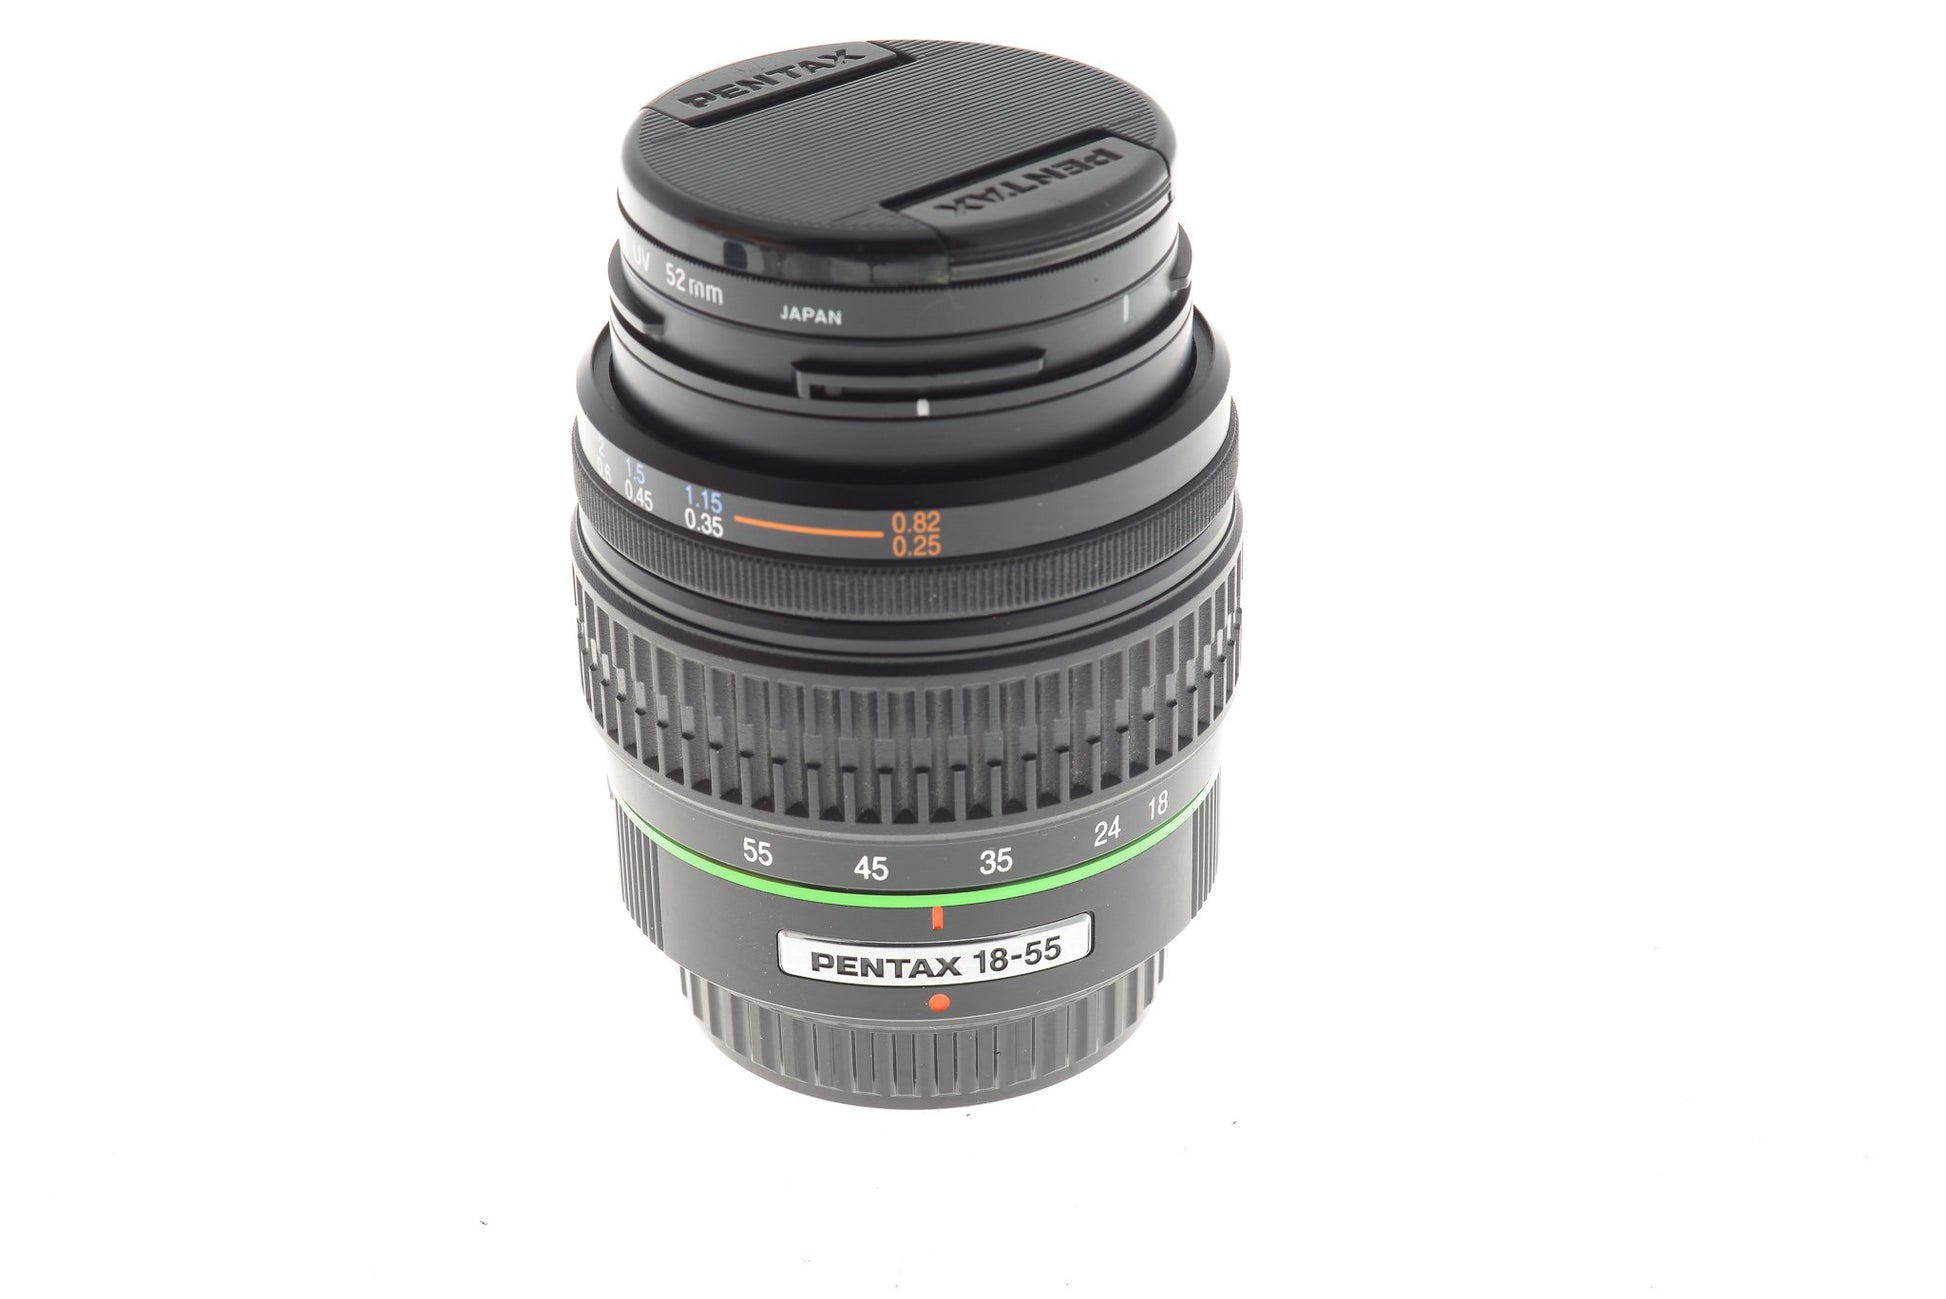 Pentax 18-55mm f3.5-5.6 SMC Pentax-DA AL - Lens